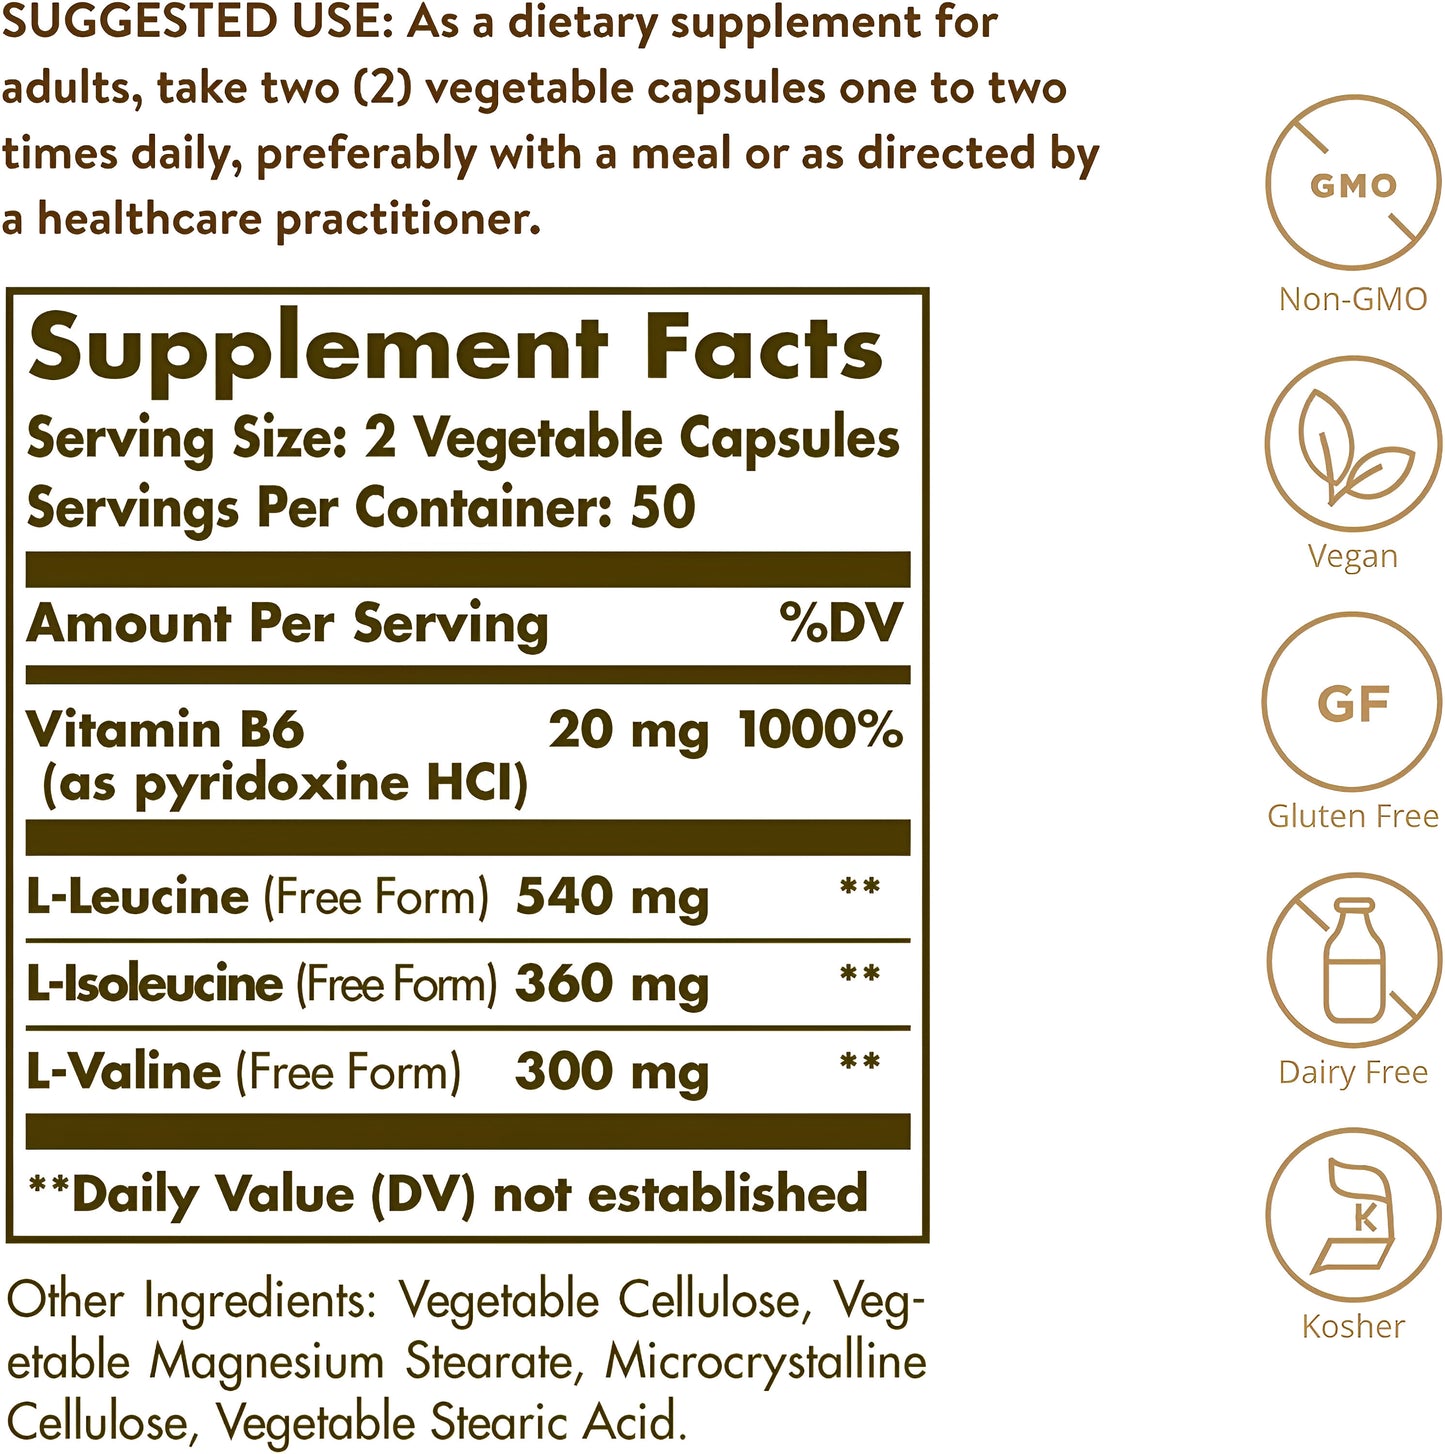 Solgar BCAA Plus, 100 Capsulas Vegetales Aminoácidos de cadena ramificada de forma libre con vitamina B6 para absorción